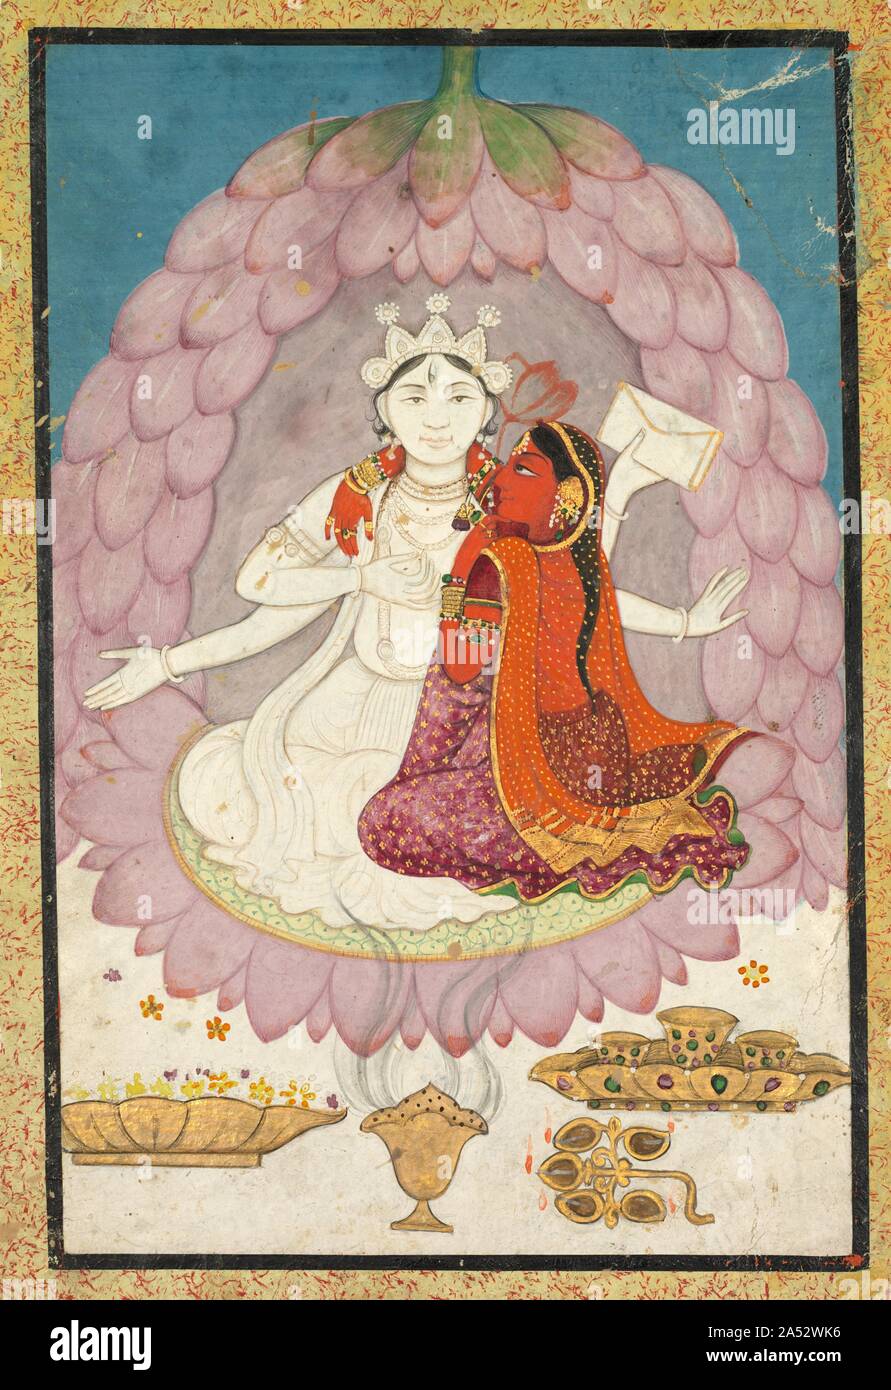 Vishnu et Lakshmi assis sur une fleur de lotus, au début des années 1800. Illustré avec full face avant en tout blanc, Vishnu, le dieu à quatre branches, semble être une statue, couronné et tenant un seul manuscrit. Au bas sont les offrandes de fleurs, d'encens, lampes à huile, et parée de tasses de l'eau pure ou de l'alcool. Son socle lotus semble avoir prennent vie grâce à l'ajout de l'auvent de pétales, apparemment abandonné du ciel pour former un espace clos privé, pour les amoureux. Vishnu&# x2019;s consort, Lakshmi, identifiés par la fleur de lotus derrière la tête, s'est manifesté comme une déesse rouge, et l'étreint. Banque D'Images